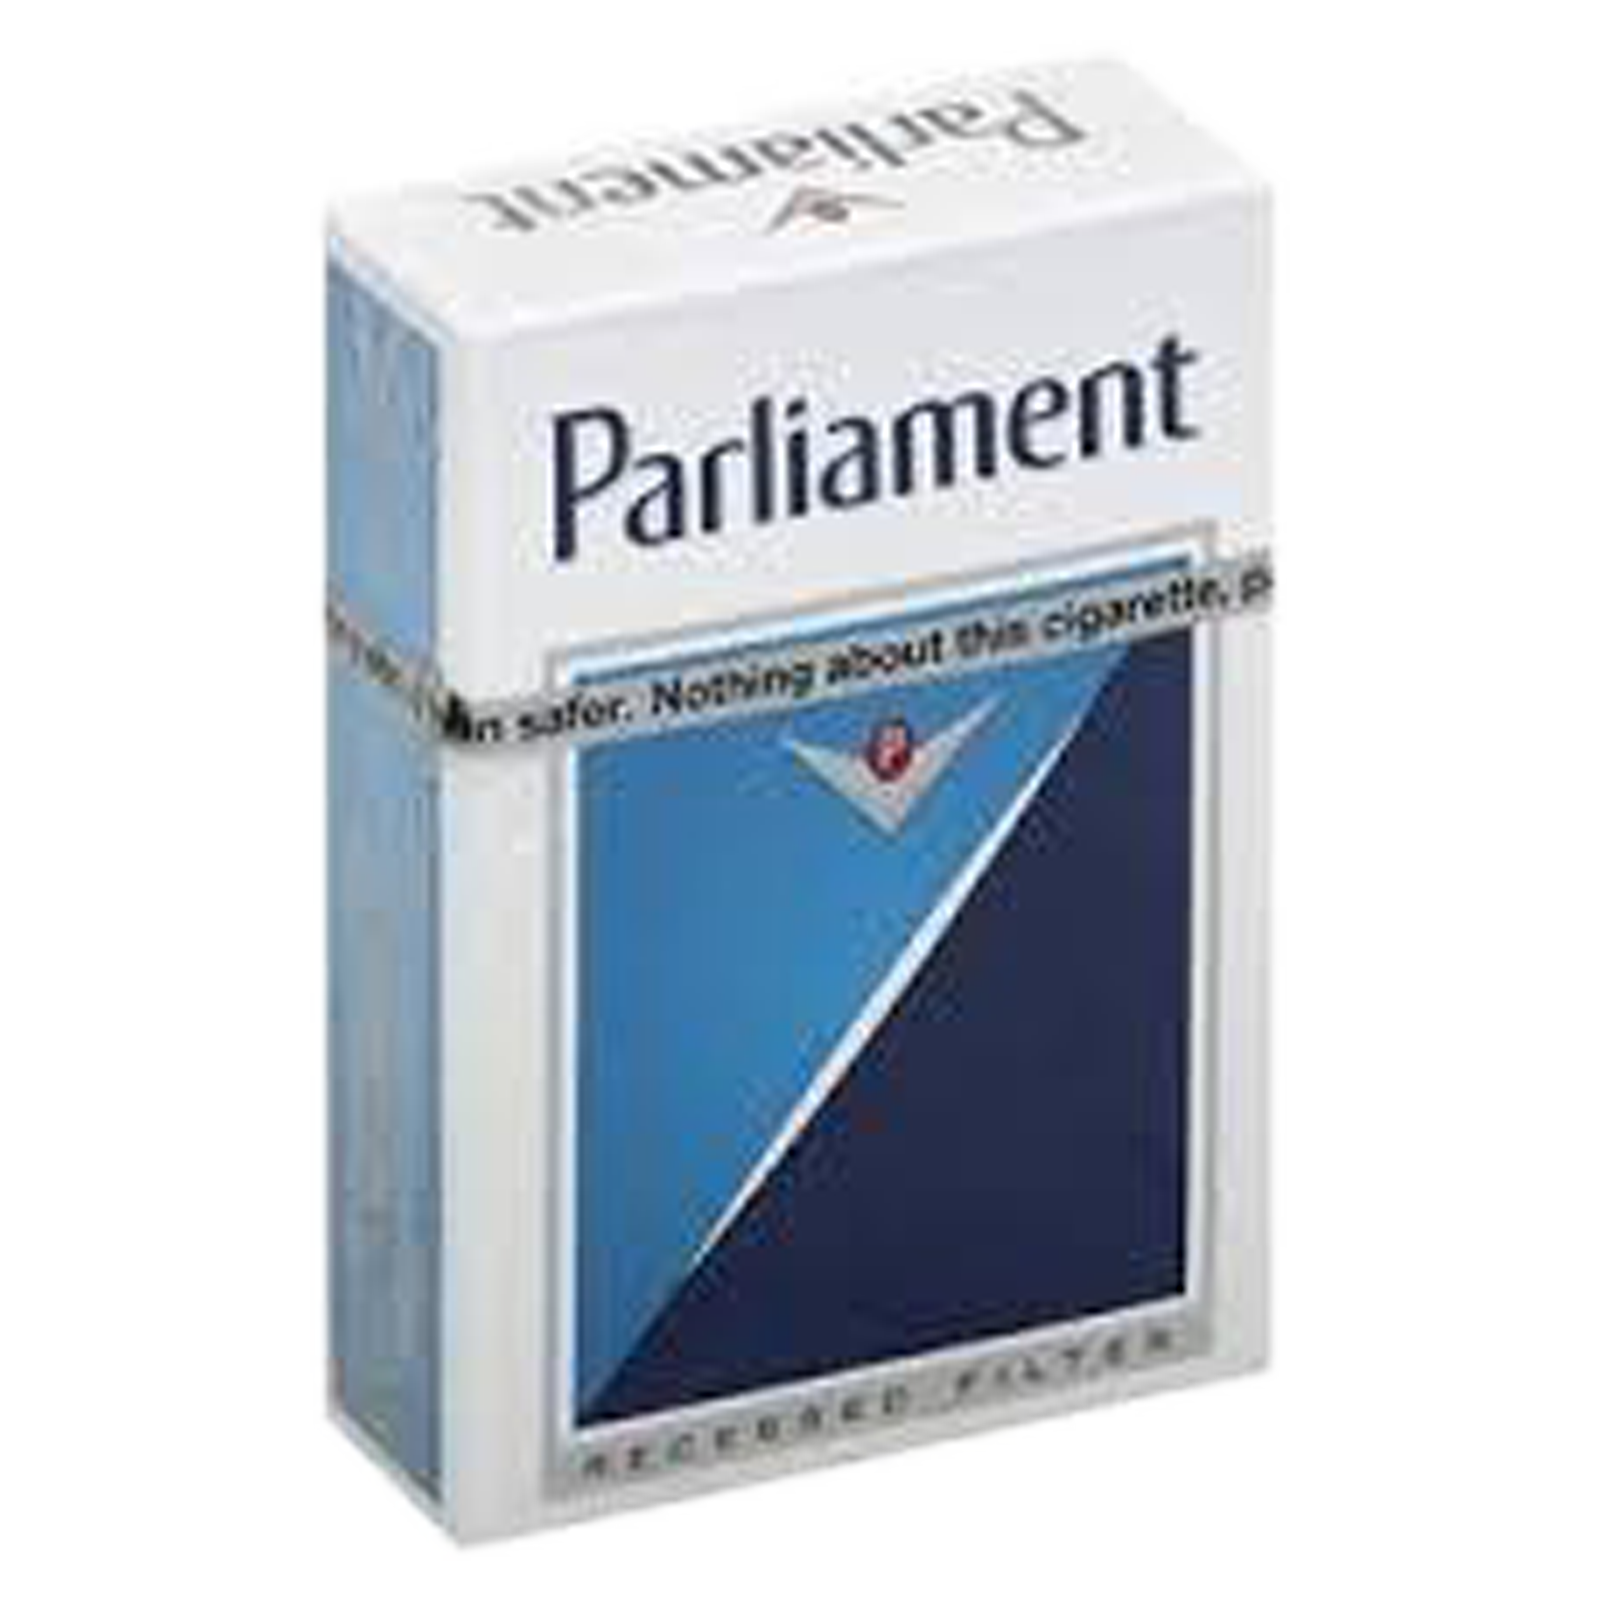 Parliament White Cigarettes 20ct Box 1ct